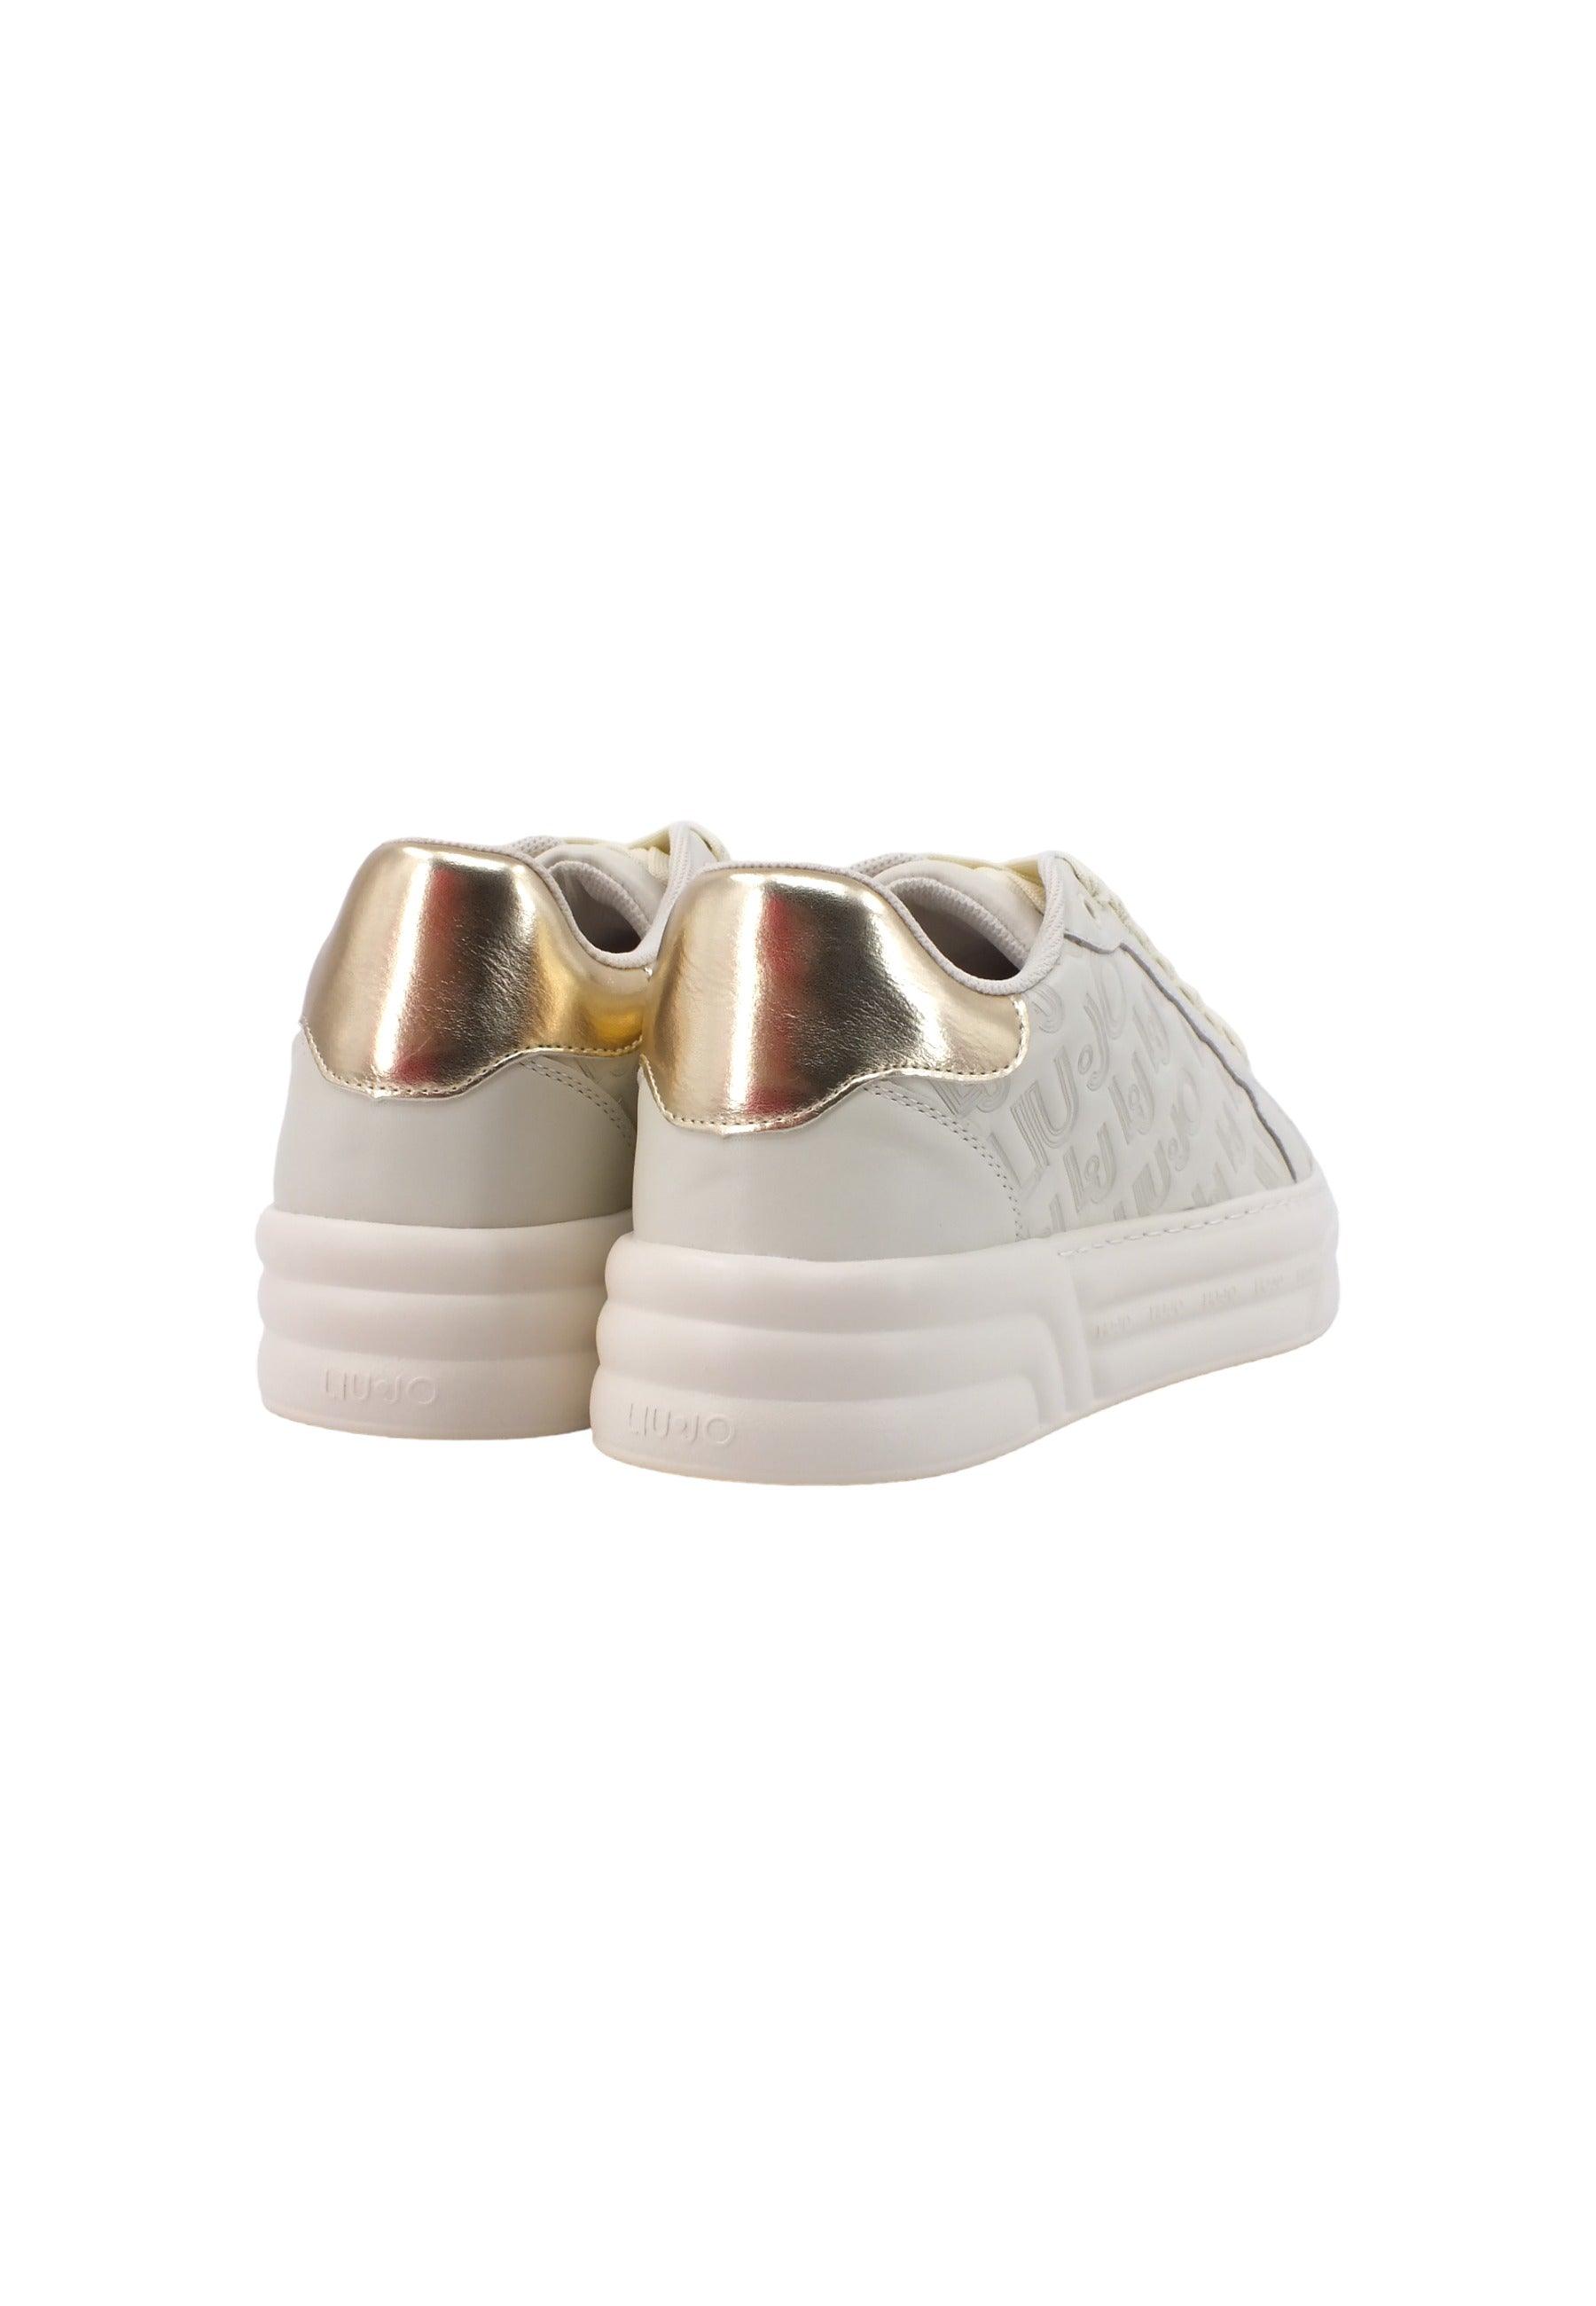 LIU JO Cleo 20 Sneaker Donna Beige Conchiglia BF3015PX144 - Sandrini Calzature e Abbigliamento